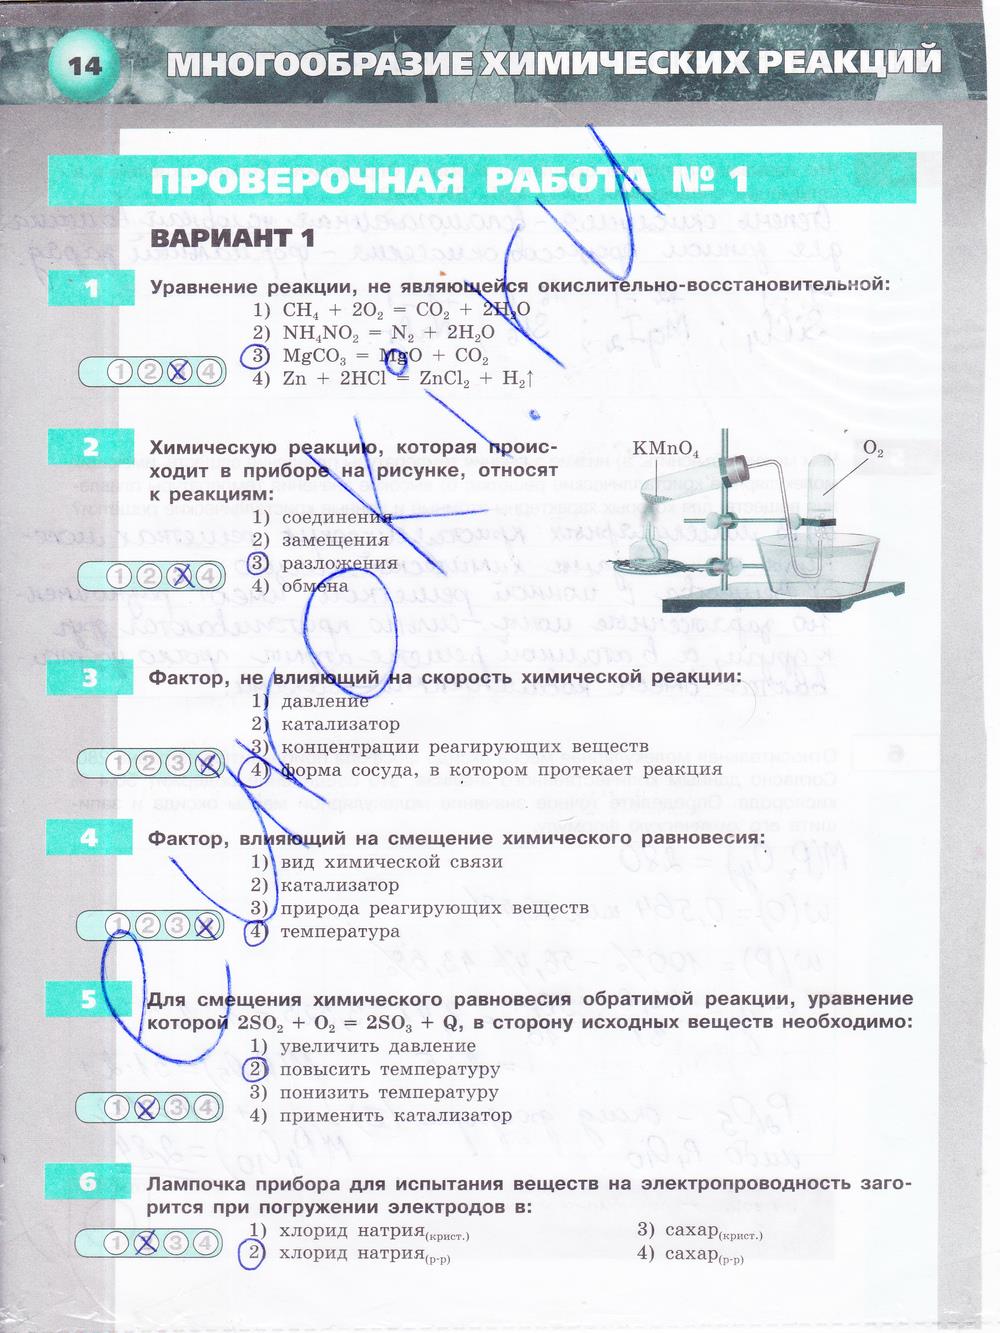 гдз 9 класс тетрадь-экзаменатор страница 14 химия Бобылева, Бирюлина